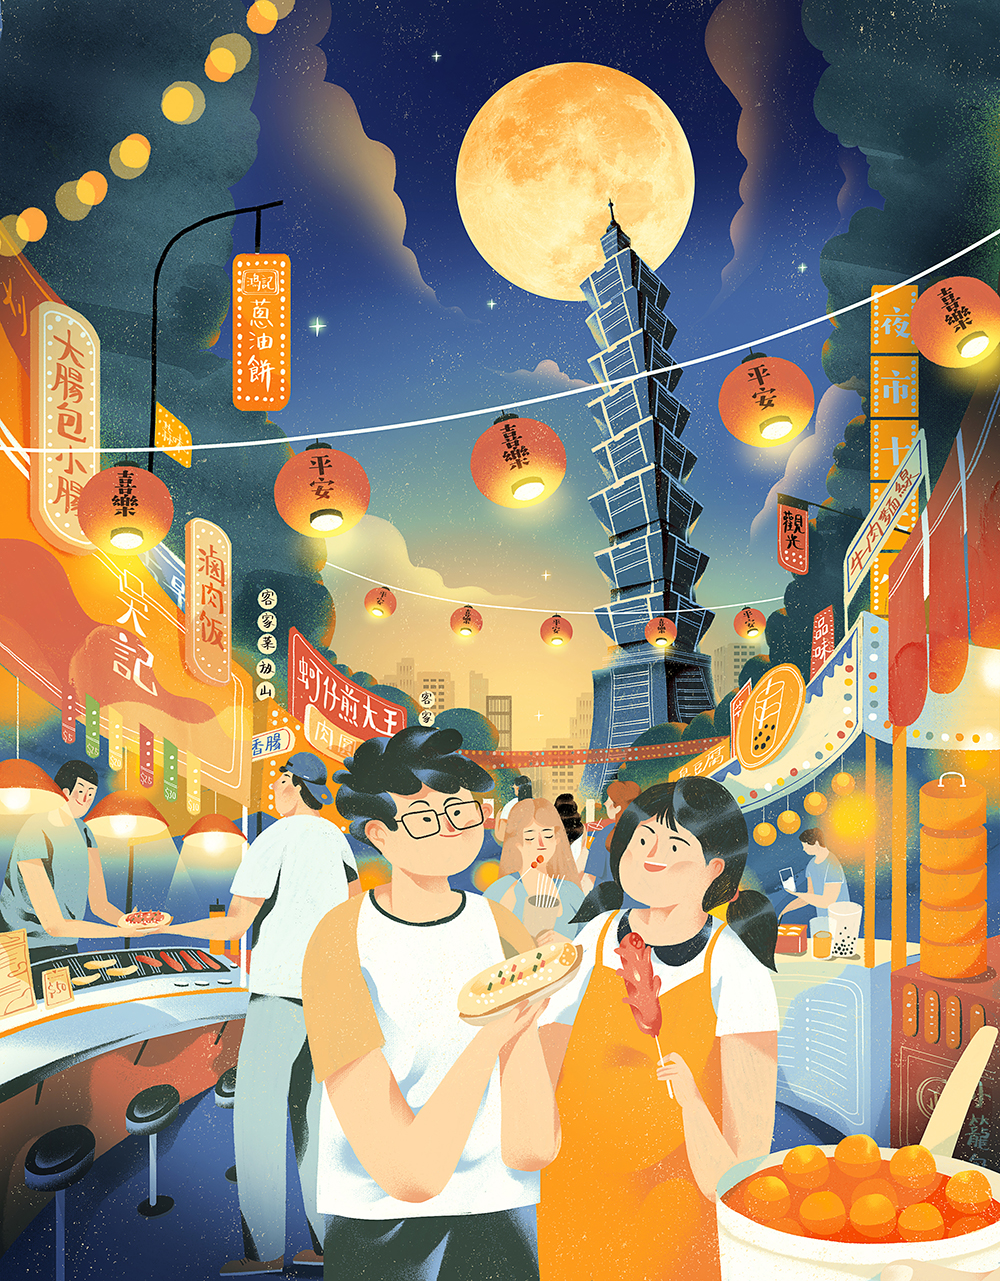 Illustration post for Alipay mid-autumn festival -Taiwan - Dola Sun  illustration